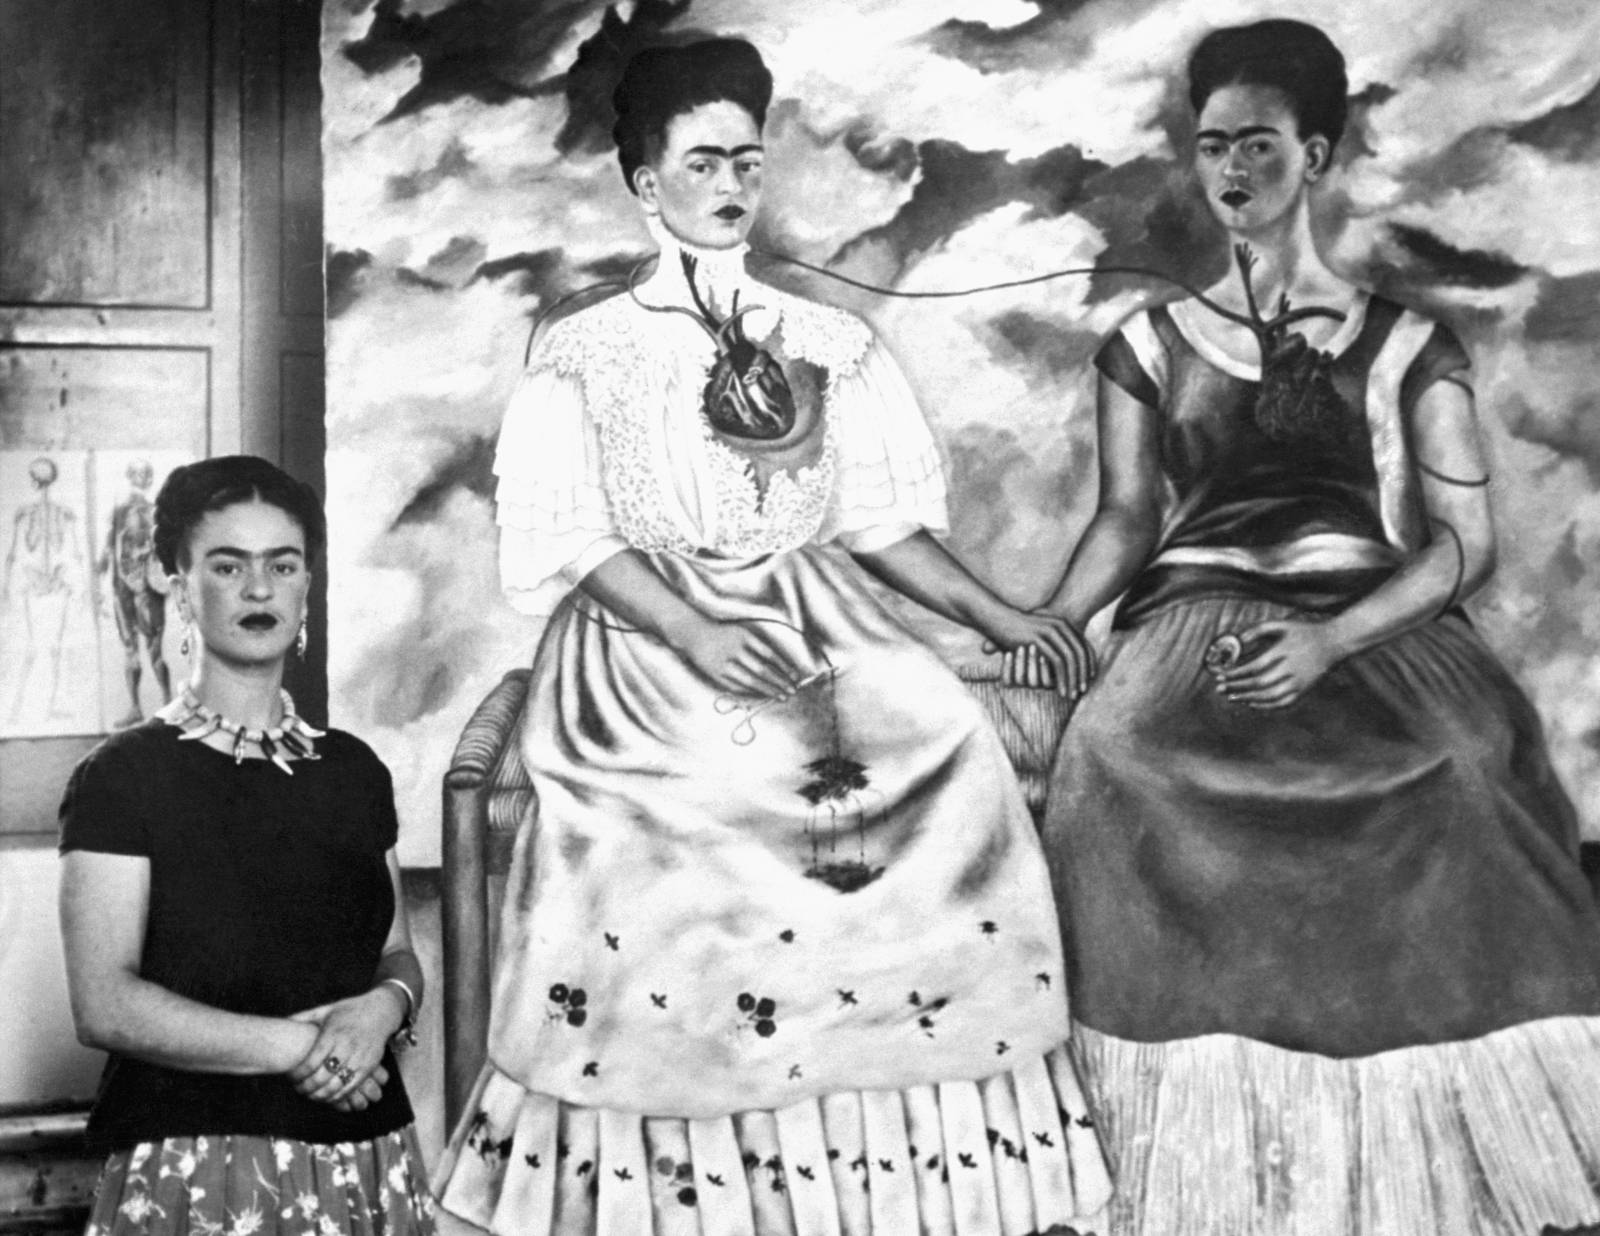 Za życia cieszyła się uznaniem. W 1939 r. zaprezentowano jej prace w Paryżu. Frida Kahlo miała wtedy 32 lata. Fot. Getty Images